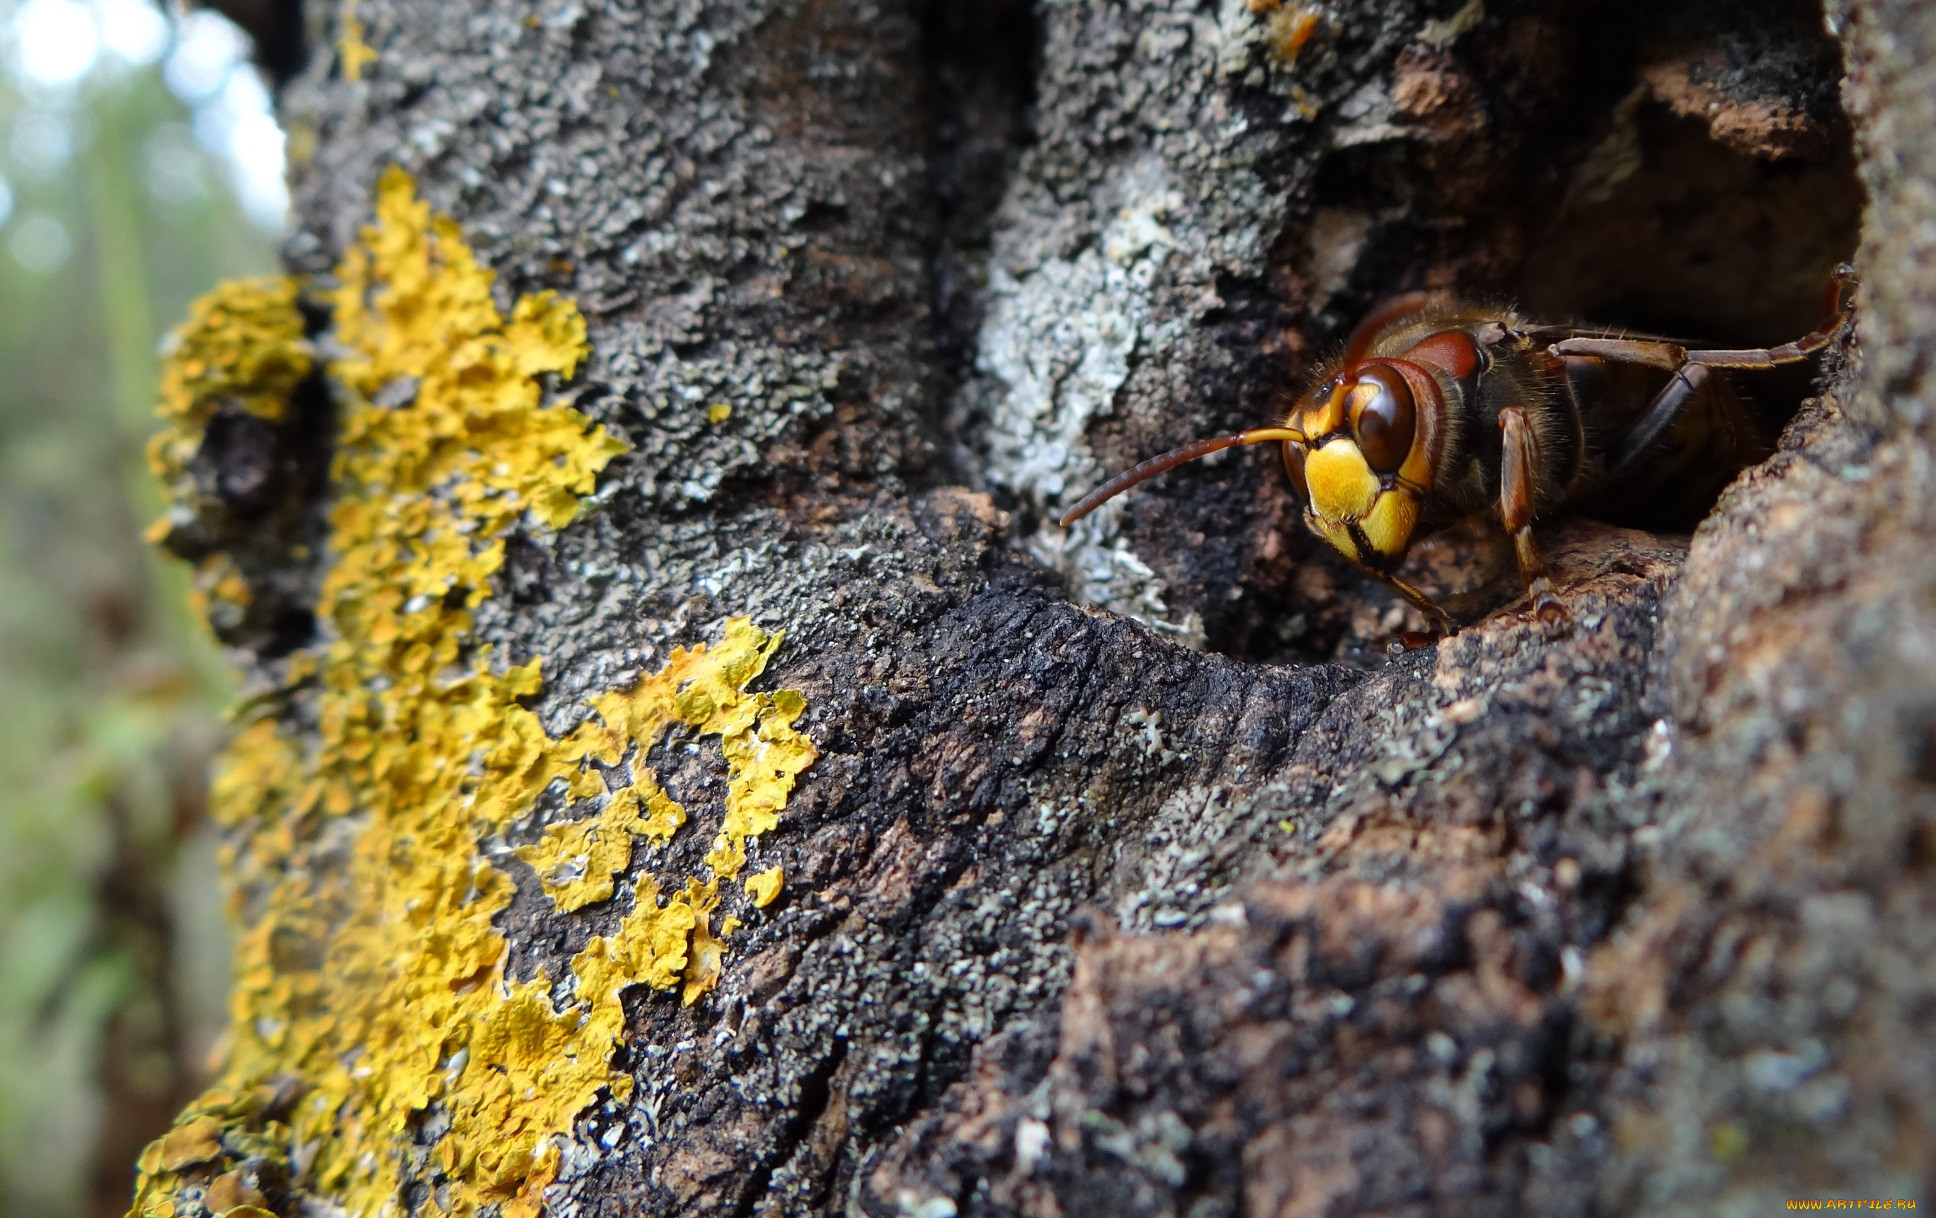 Шмель и пчела - какие отличия в образе жизни, питании, размножении